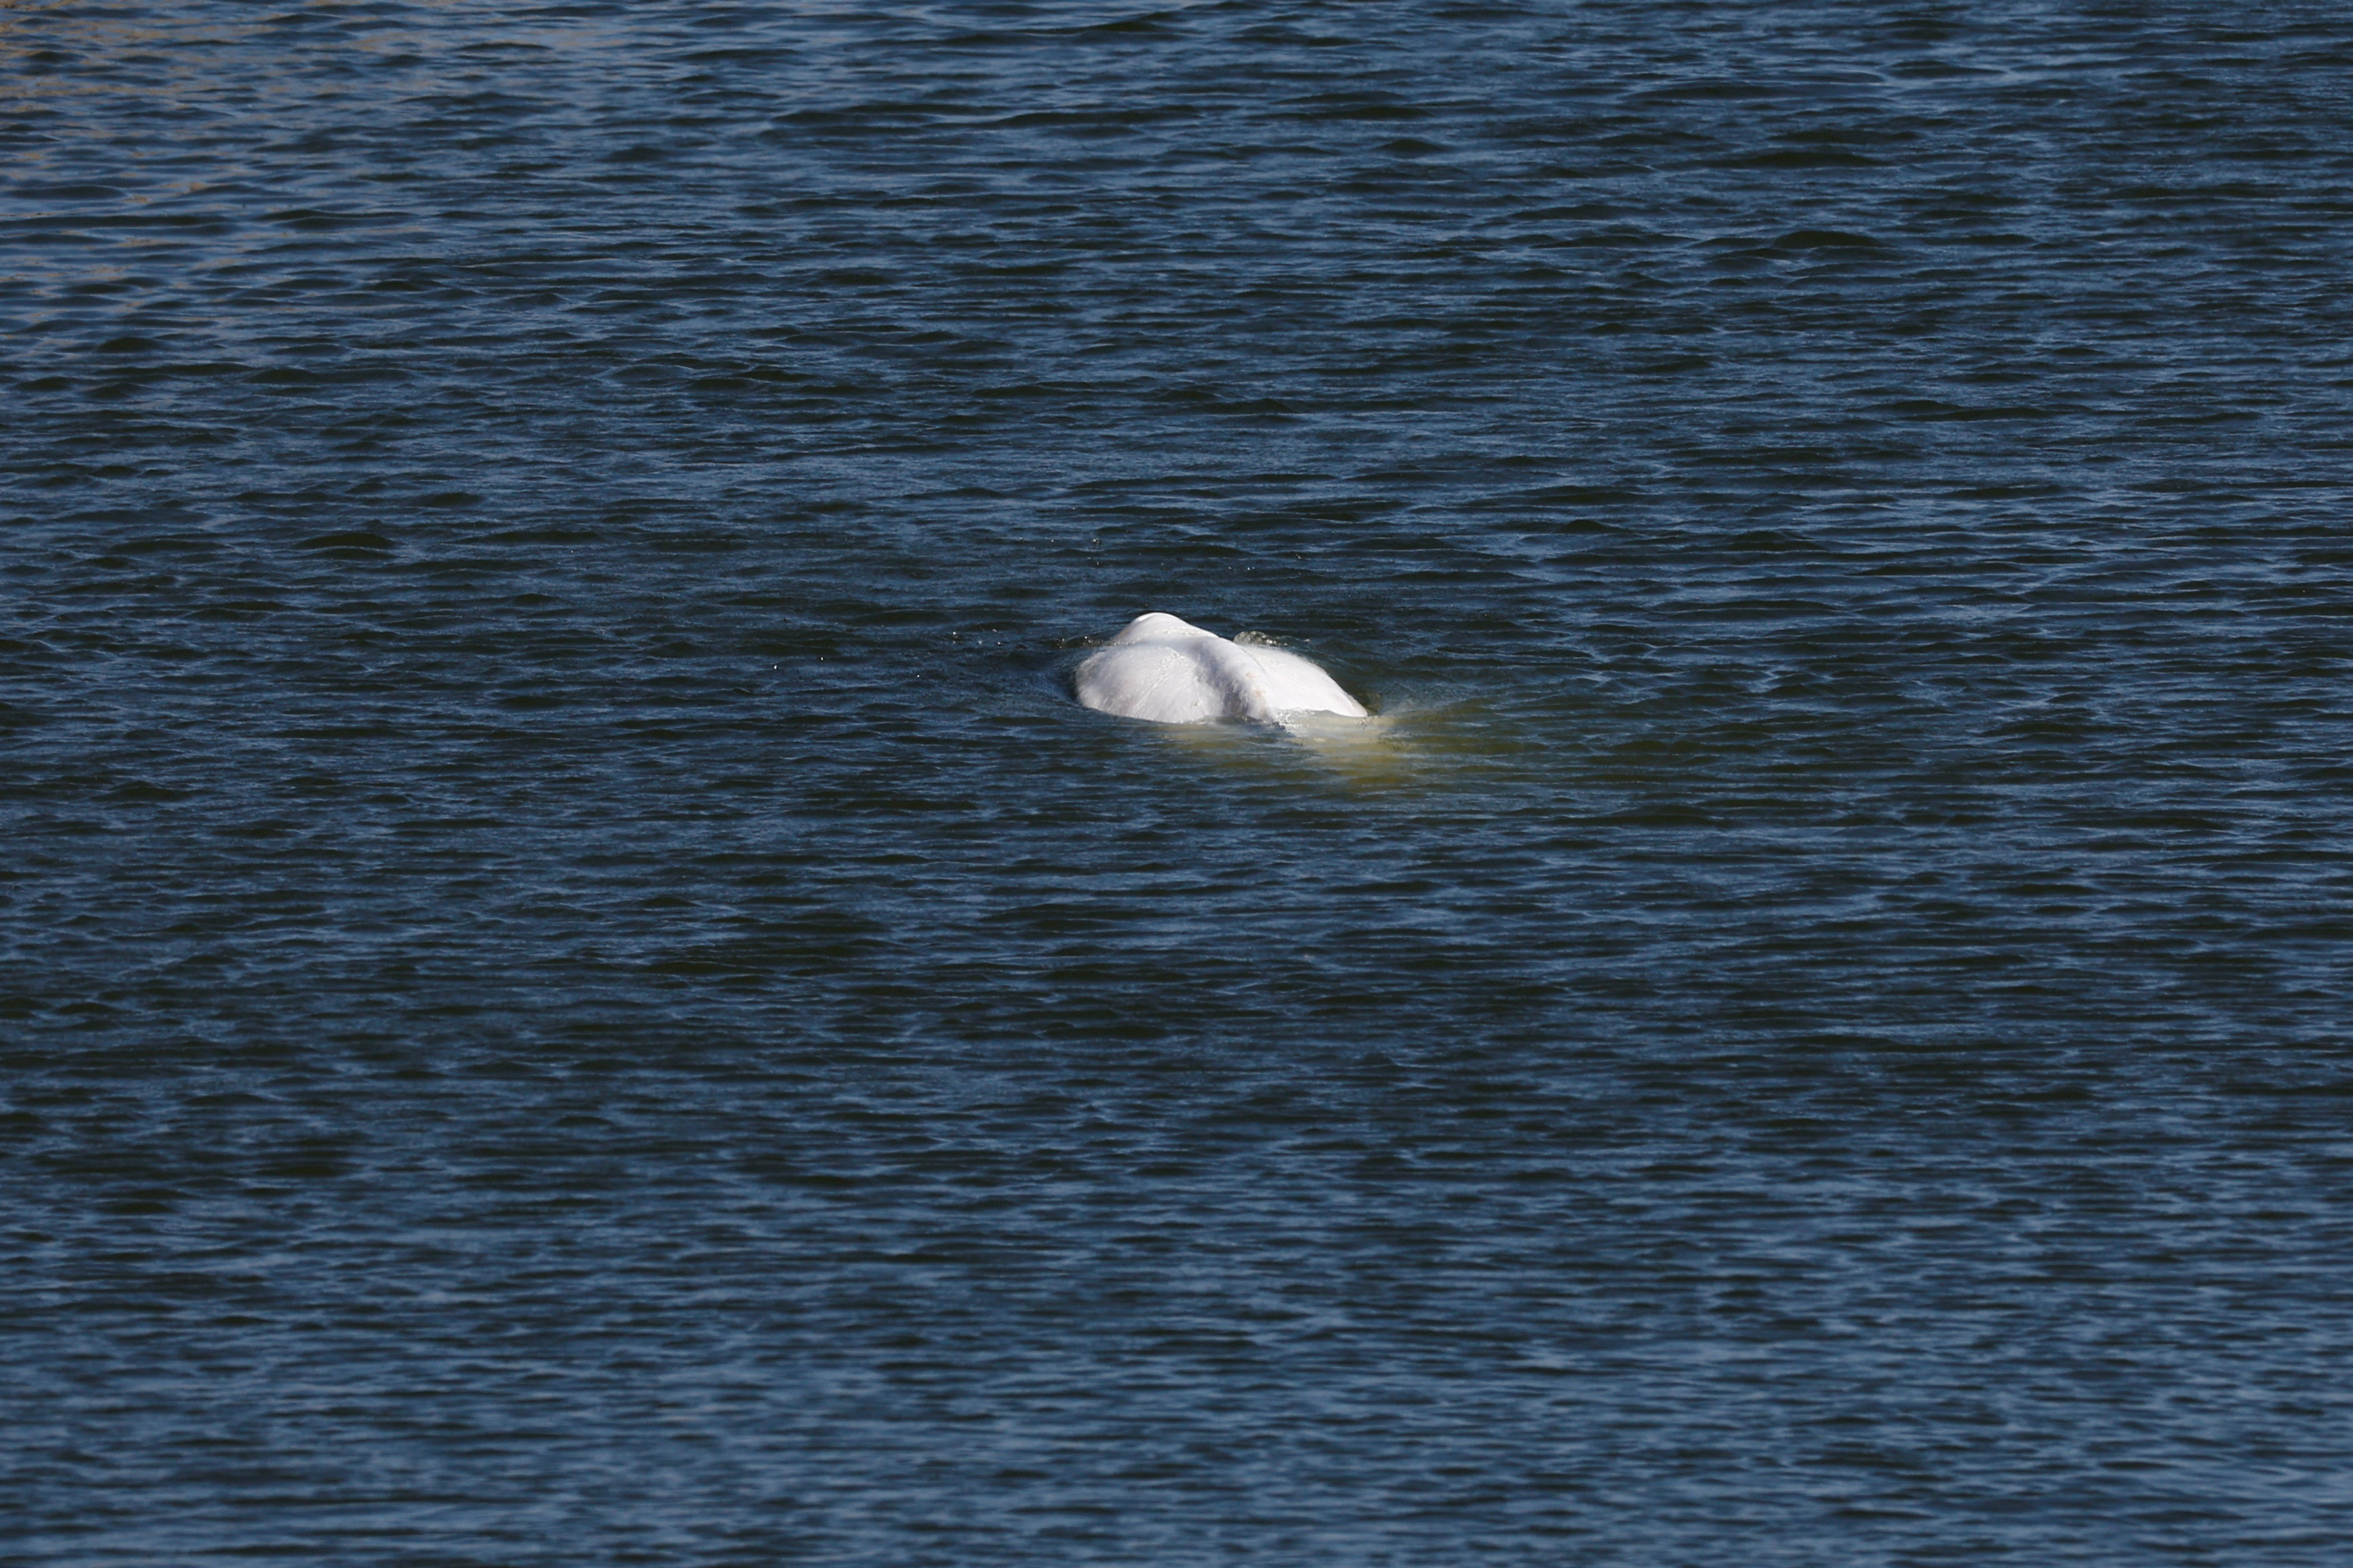 Una beluga nada por el río Sena en Francia, cerca de la esclusa de Notre-Dame-de-la-Garenne en Saint-Pierre-la-Garenne, Francia, el 8 de agosto de 2022 (REUTERS/Benoit Tessier)